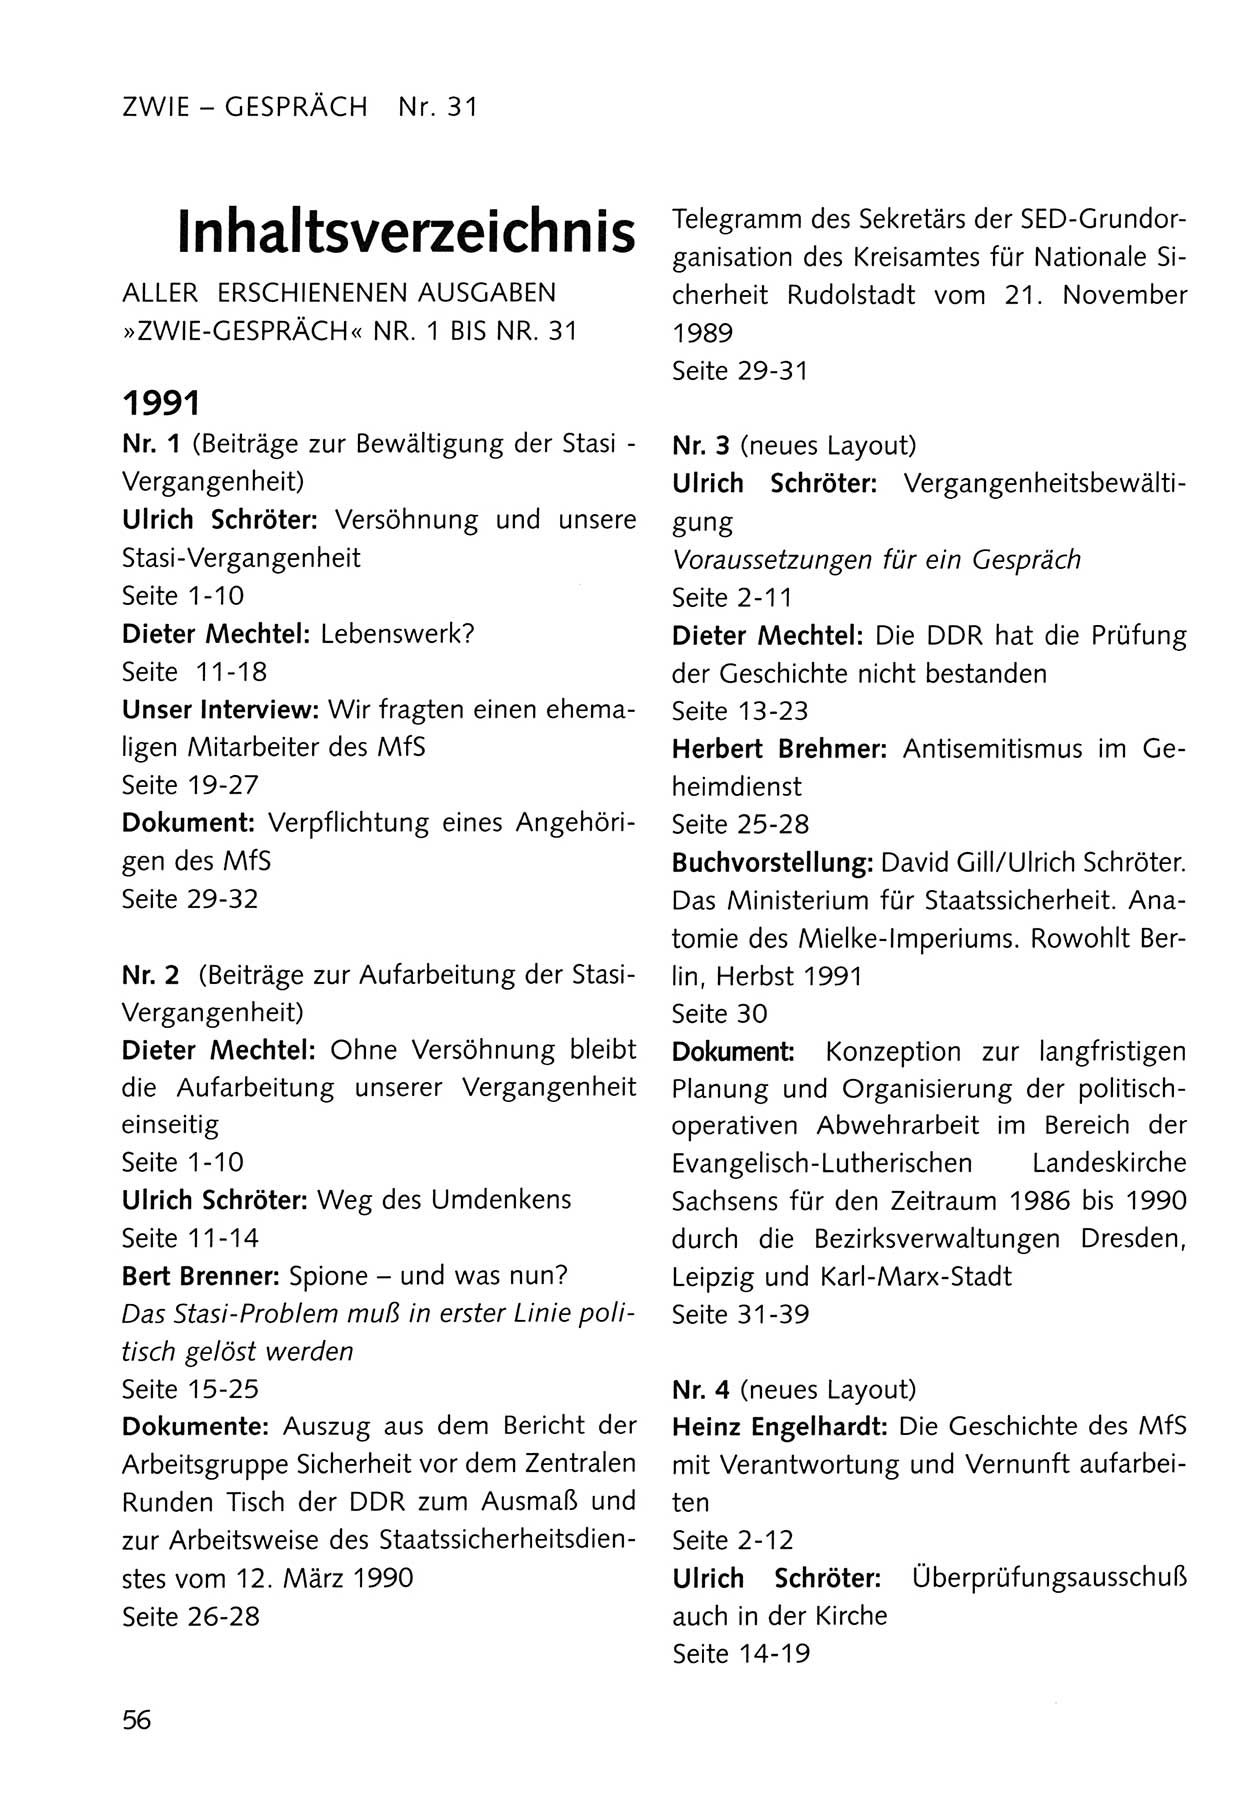 Zwie-Gespräch, Beiträge zum Umgang mit der Staatssicherheits-Vergangenheit [Deutsche Demokratische Republik (DDR)], Ausgabe Nr. 31, Berlin 1995, Seite 56 (Zwie-Gespr. Ausg. 31 1995, S. 56)